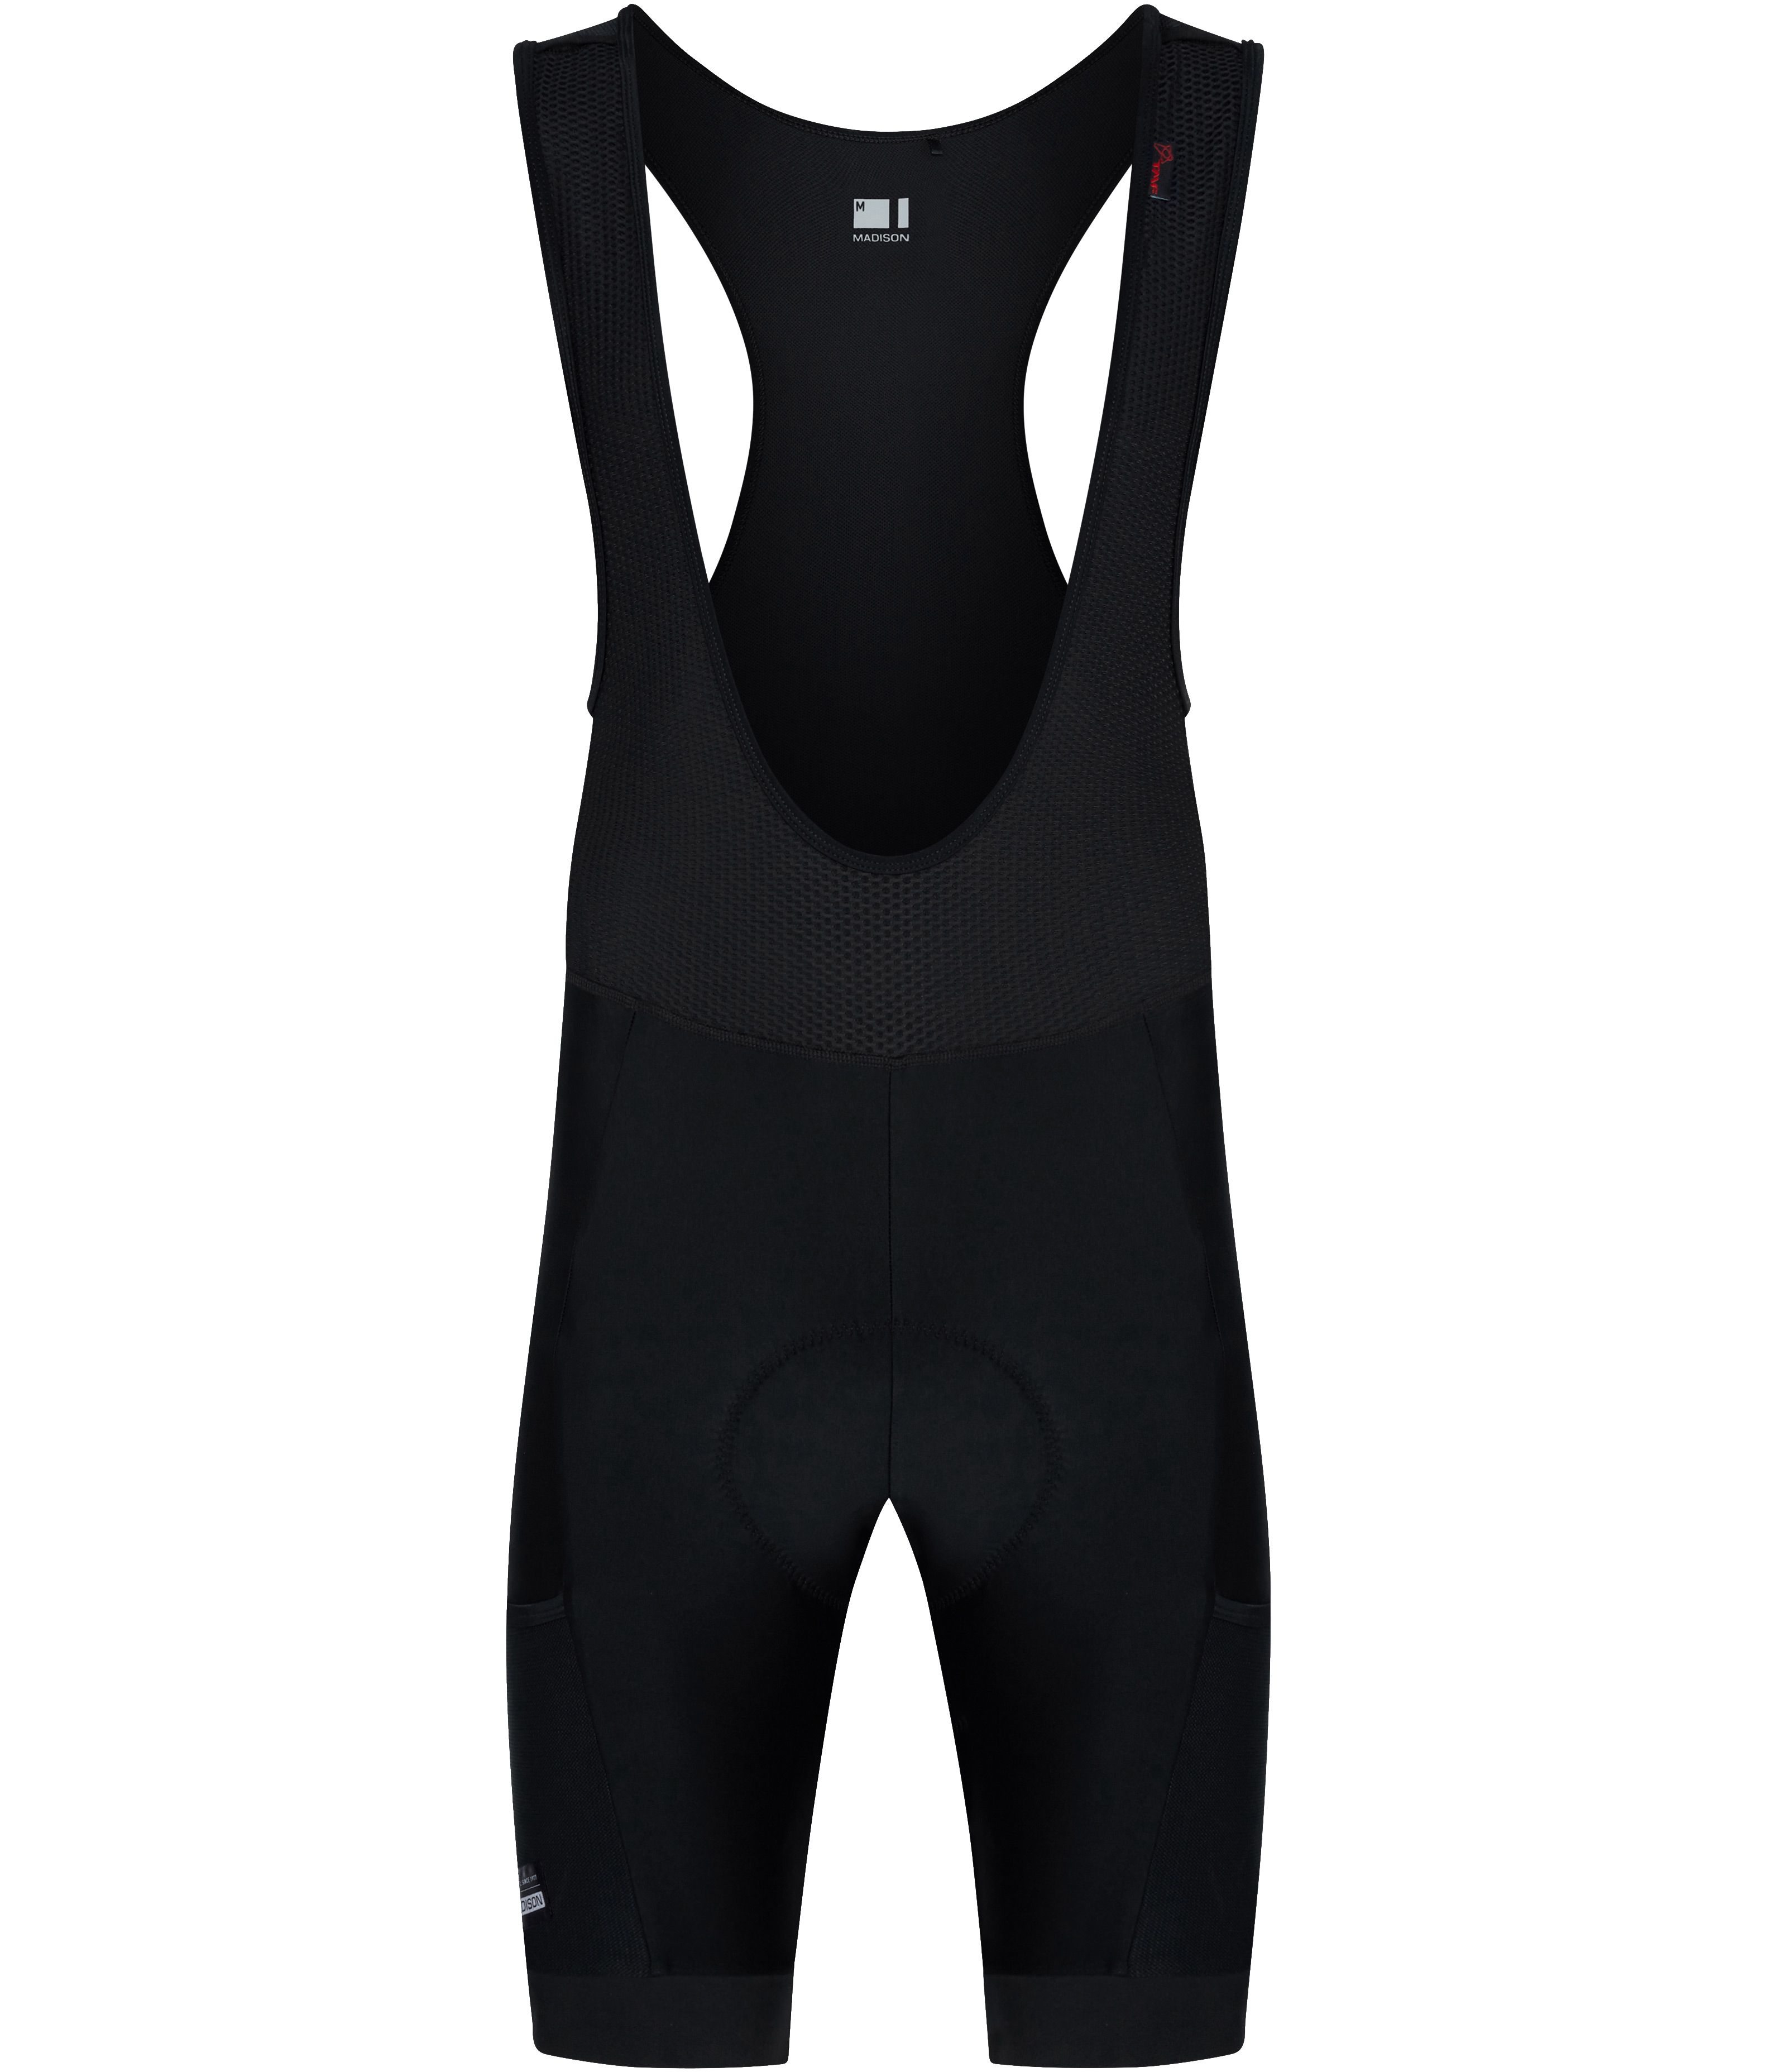 Madison Roam Cargo Bib Shorts Black - £63.99 | Shorts - Lycra Bib Road ...